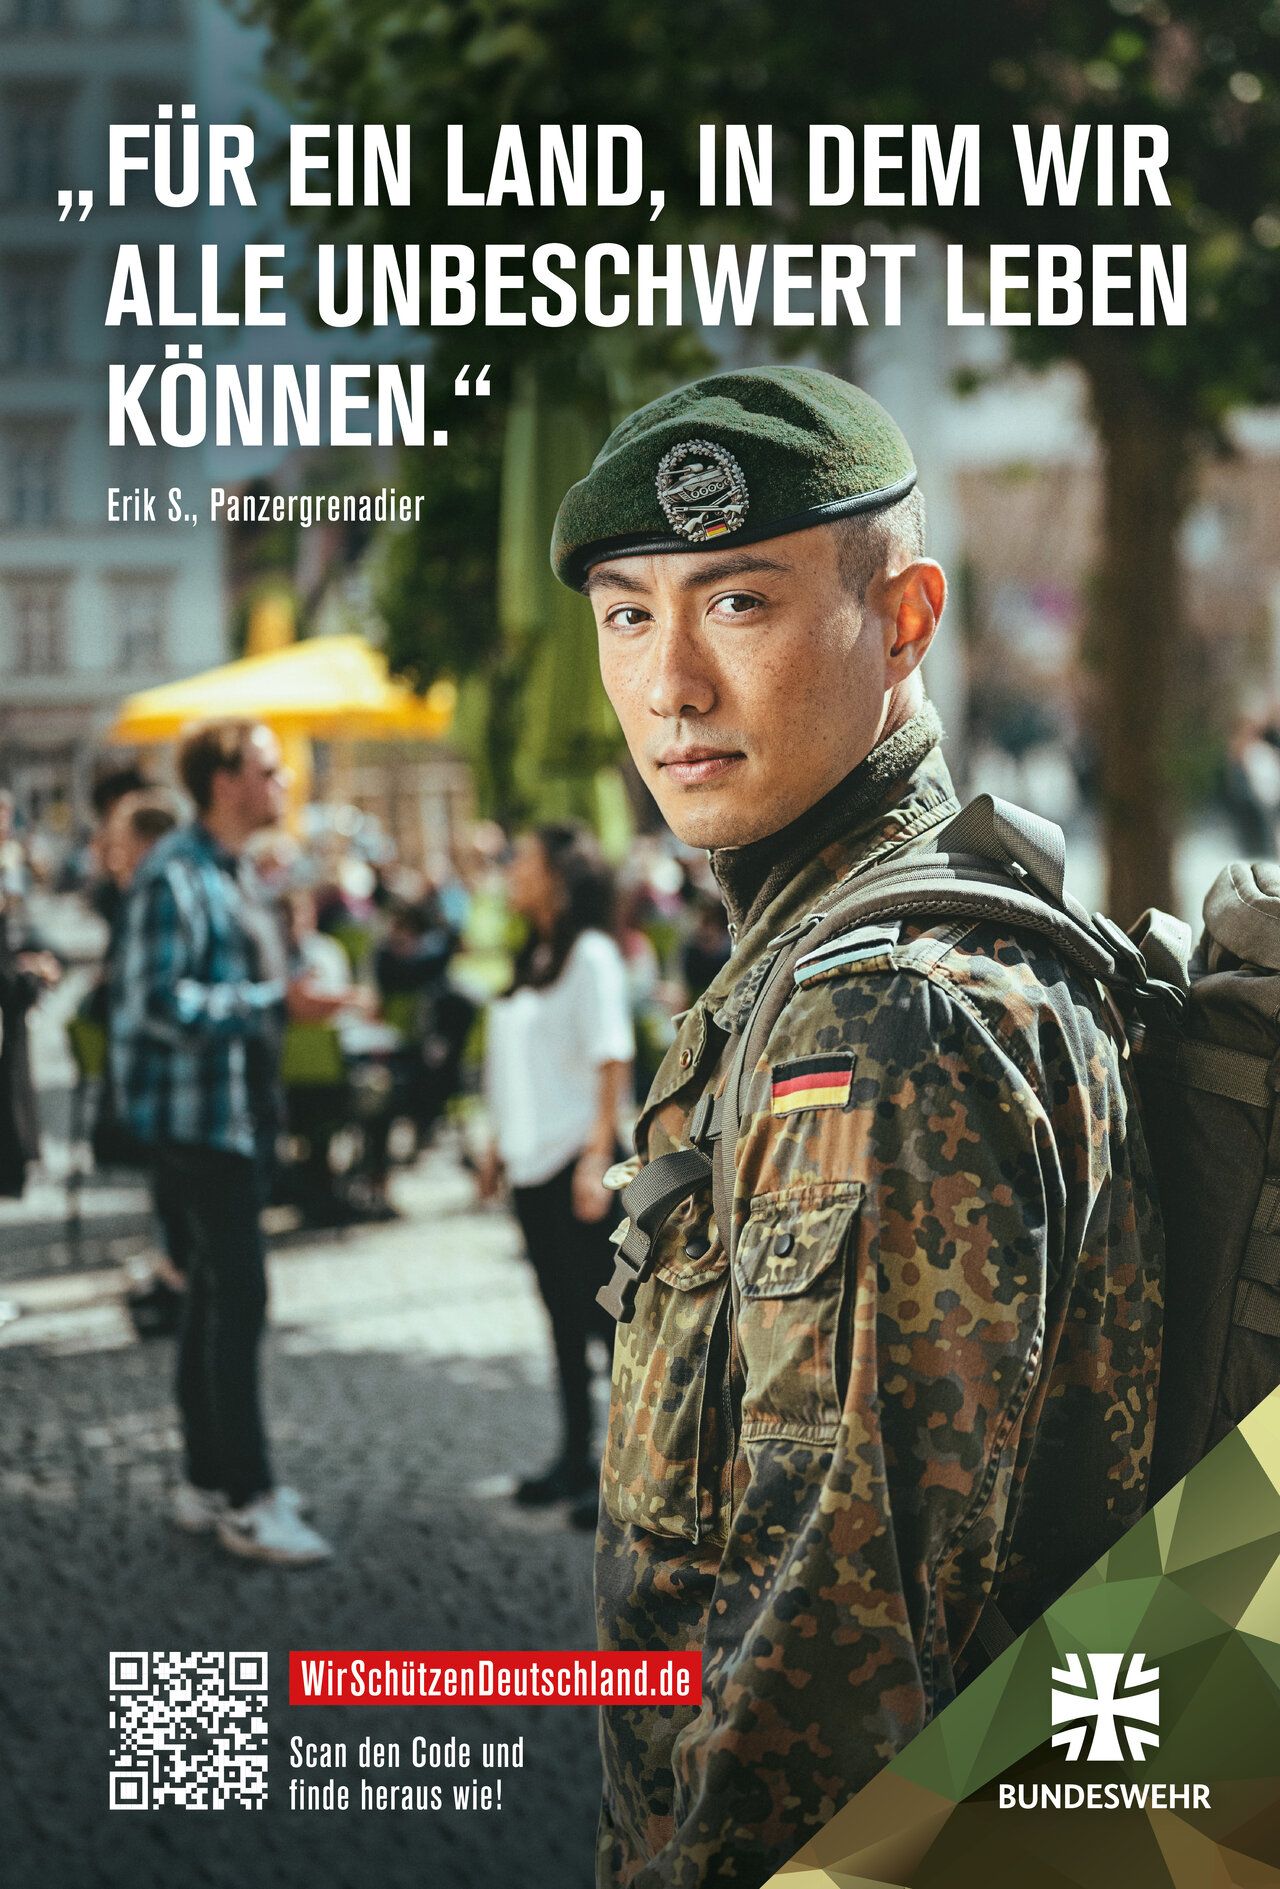 Ein Soldat in Uniform schaut über die Schulter in die Kamera, im Hintergrund sind Menschen in einer Stadt zu erkennen."Für ein Land, in dem wir alle unbeschwert leben können."